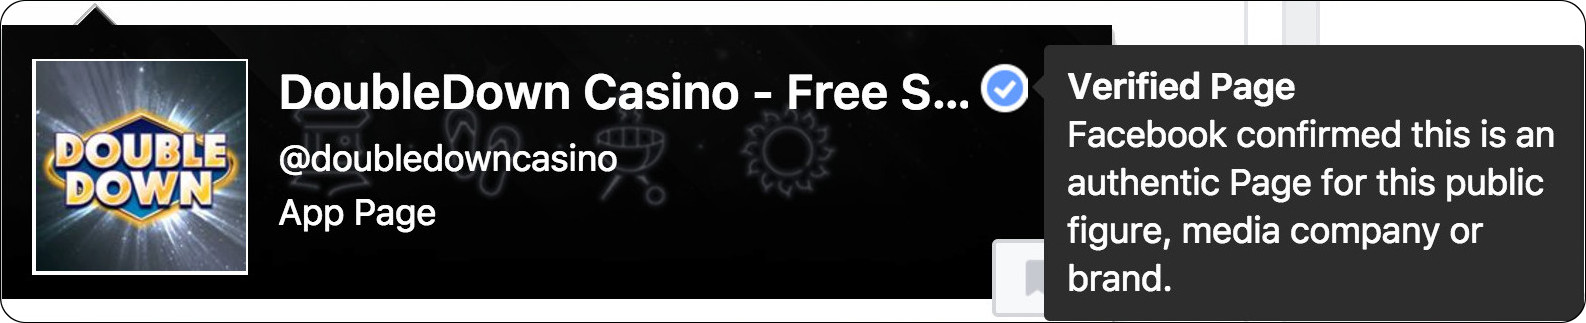 3dice Casino - Online Casino Winnings Must Be Declared - Usaha Slot Machine